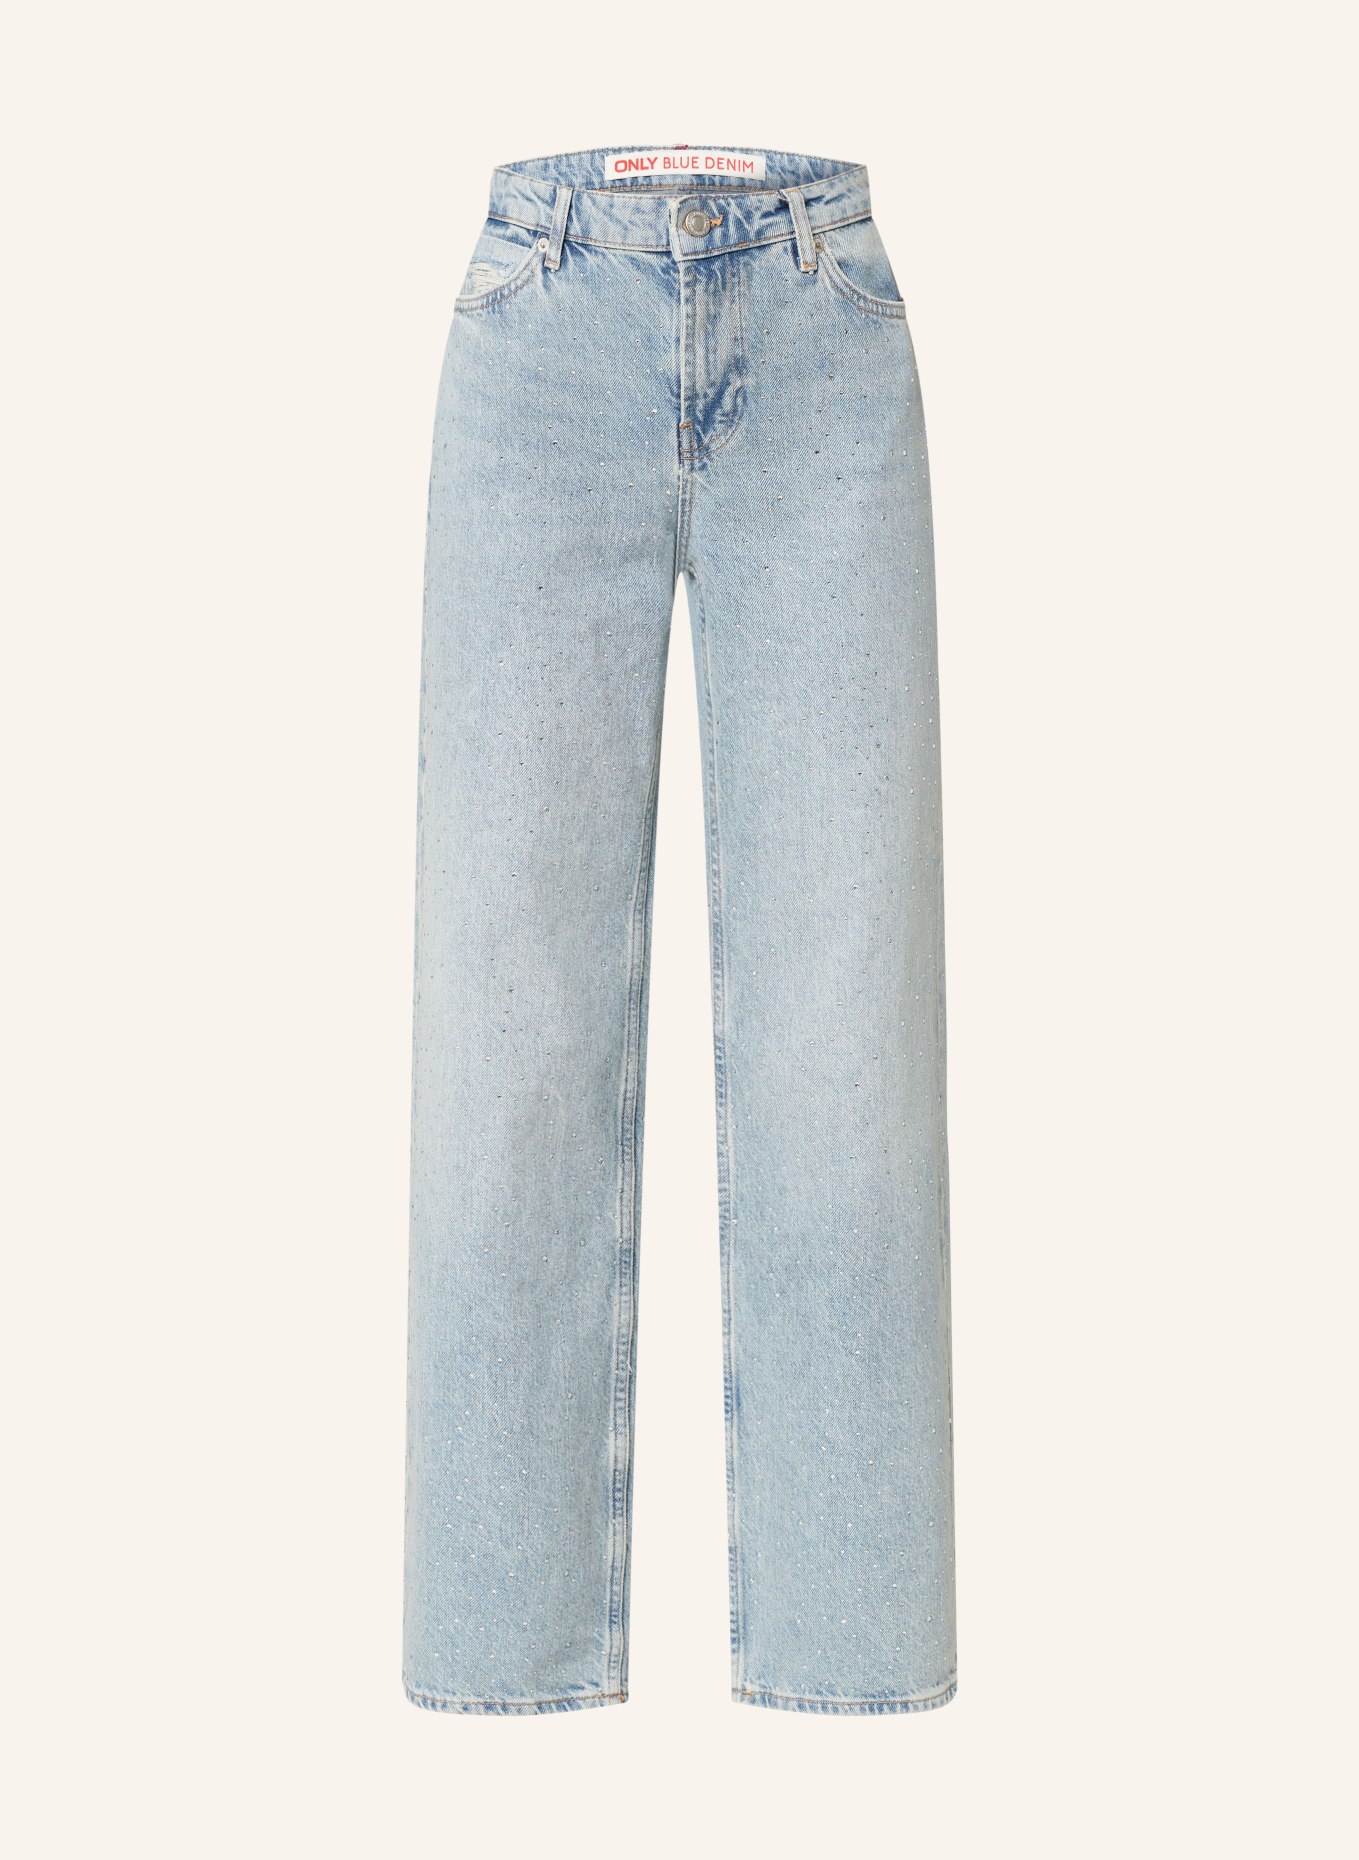 ONLY Straight Jeans mit Schmucksteinen, Farbe: LIGHT BLUE DENIM (Bild 1)